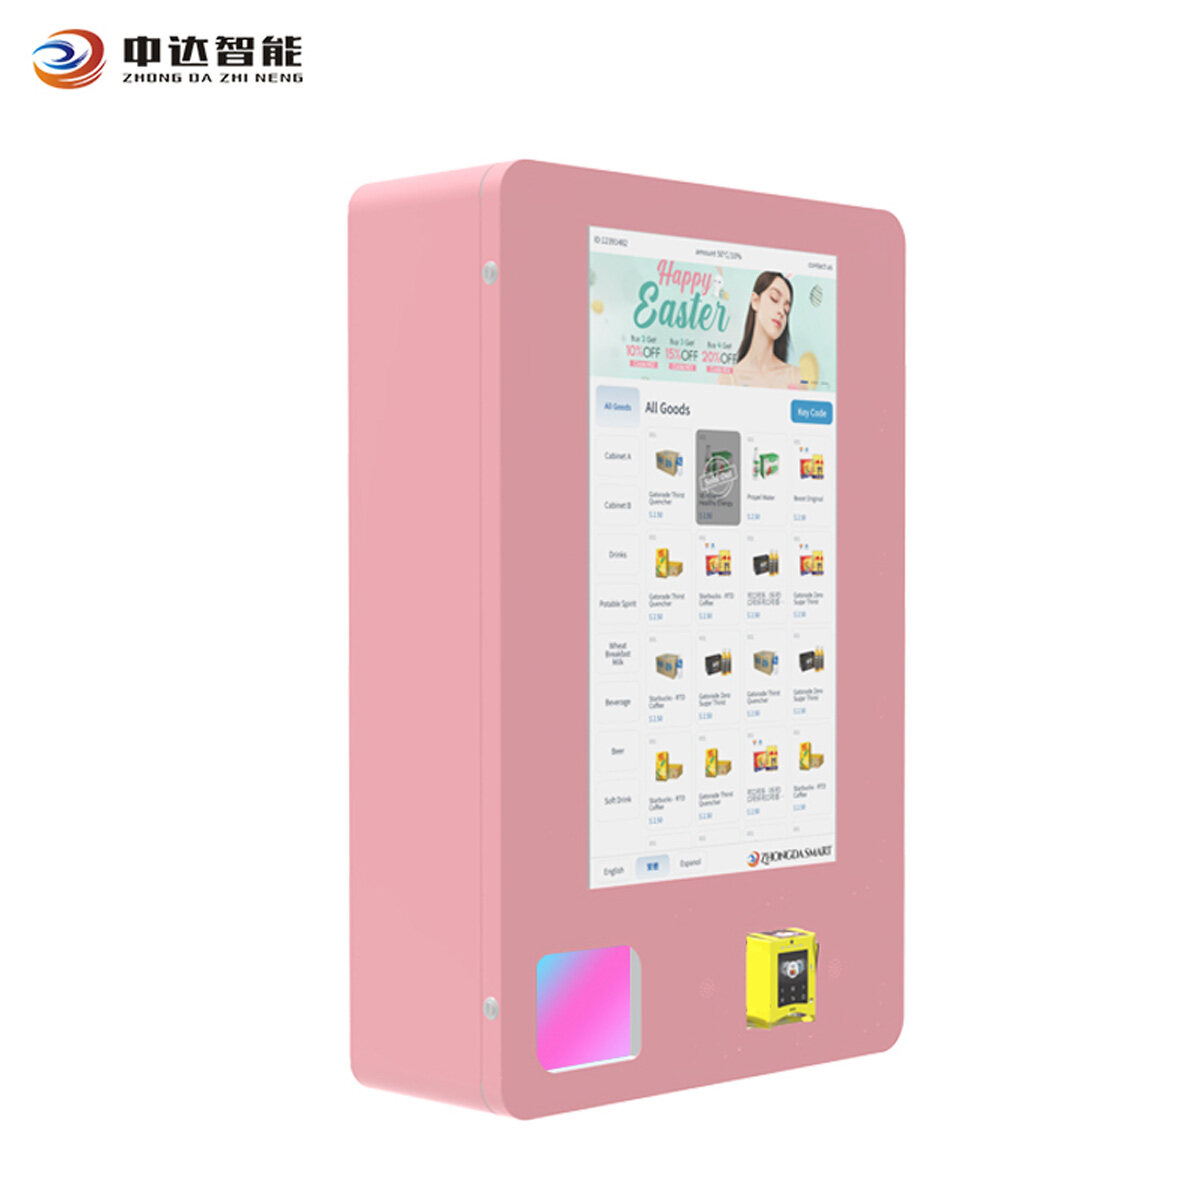 Custom beauty supply vending machine,China beauty vending machine,wall mounted mini vending machine Manufacturer,small wall mounted vending machines Factory